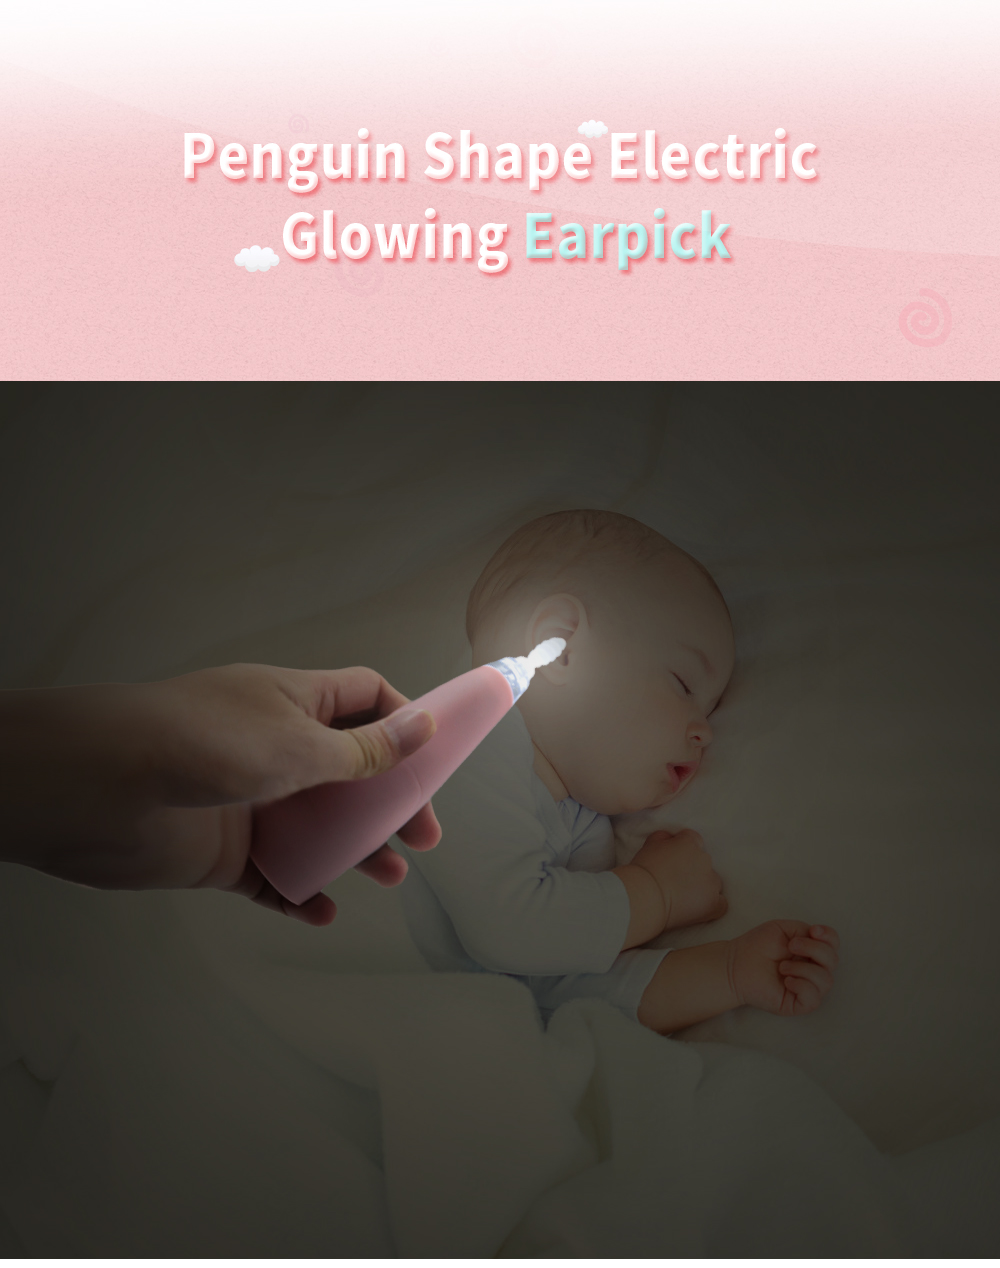 Penguin Shape Electric Glowing Ear Spoon